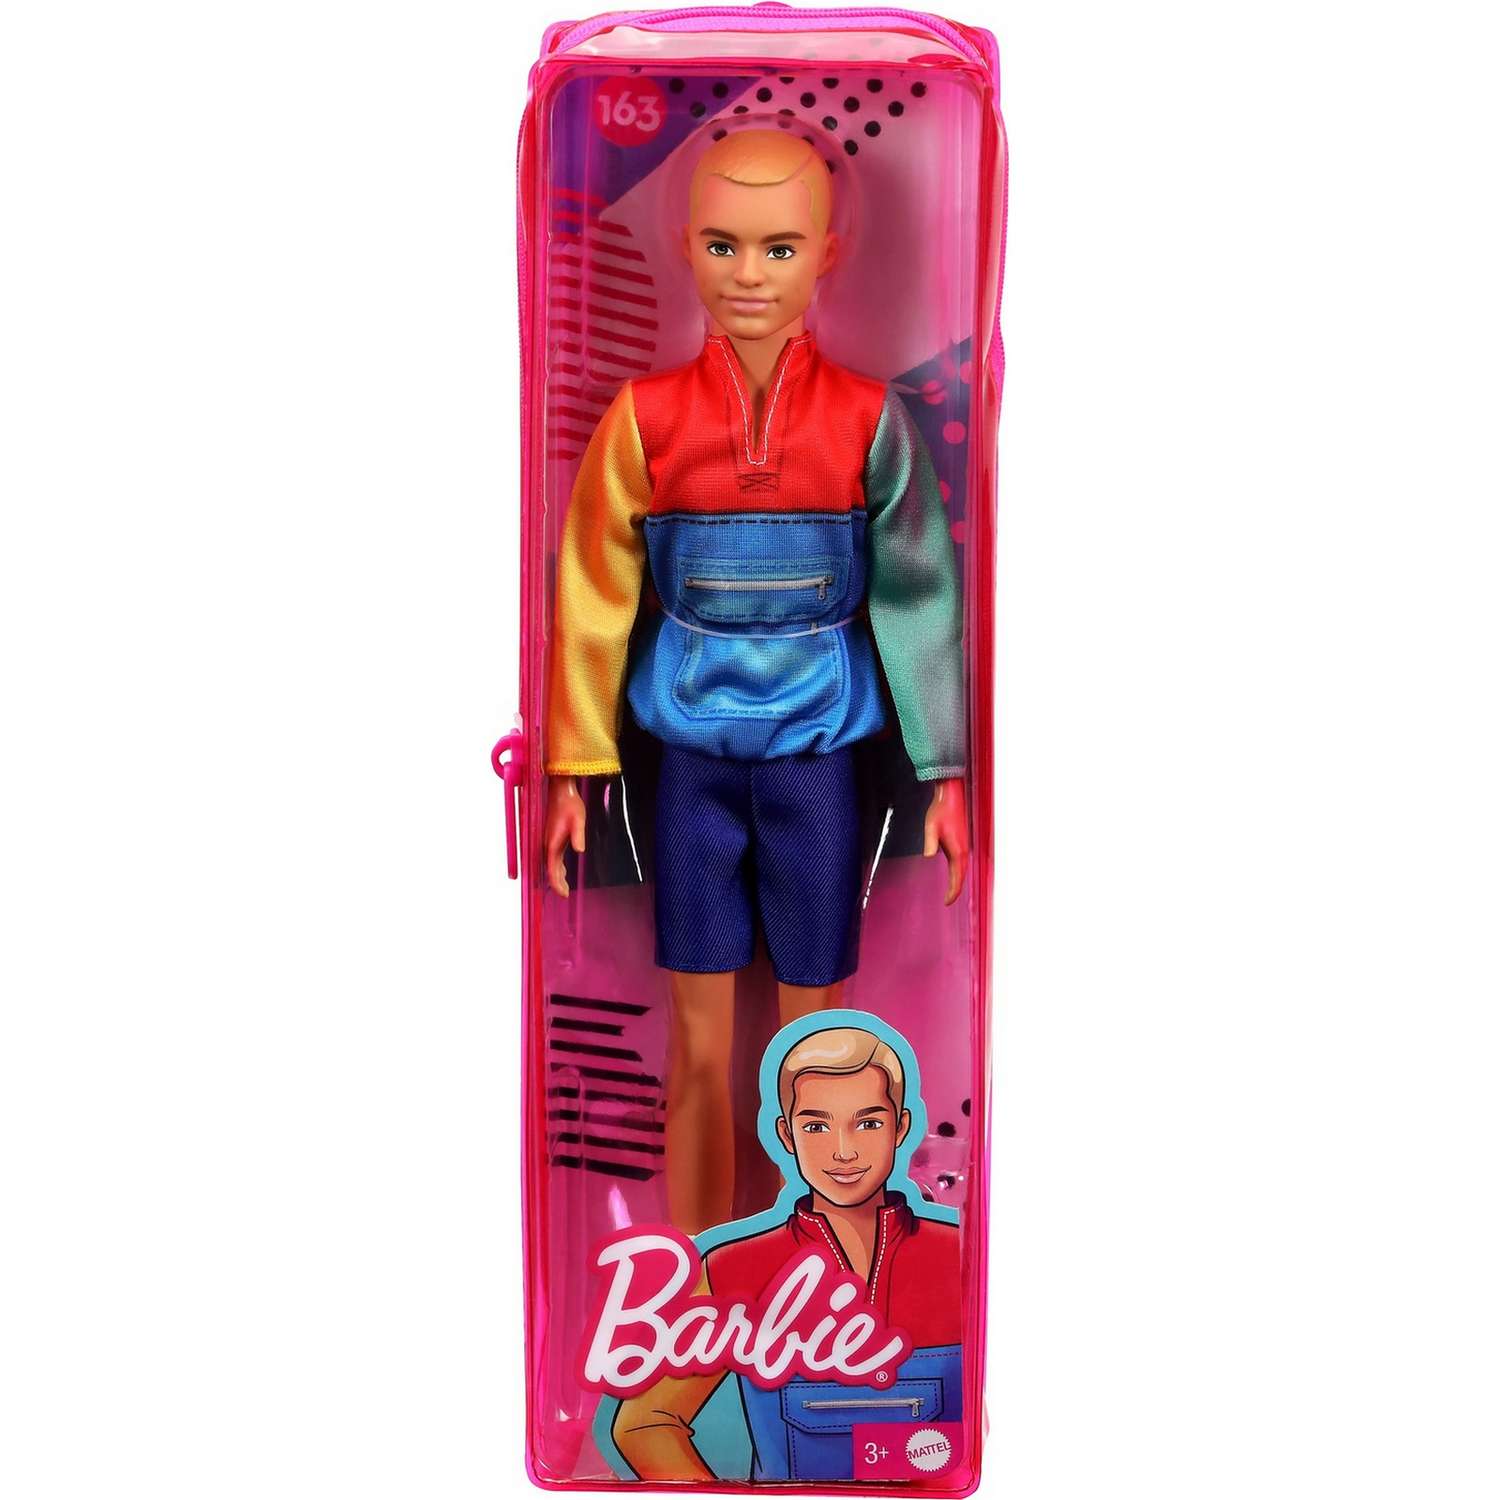 Кукла Barbie Игра с модой Кен 163 GRB88 DWK44 - фото 2